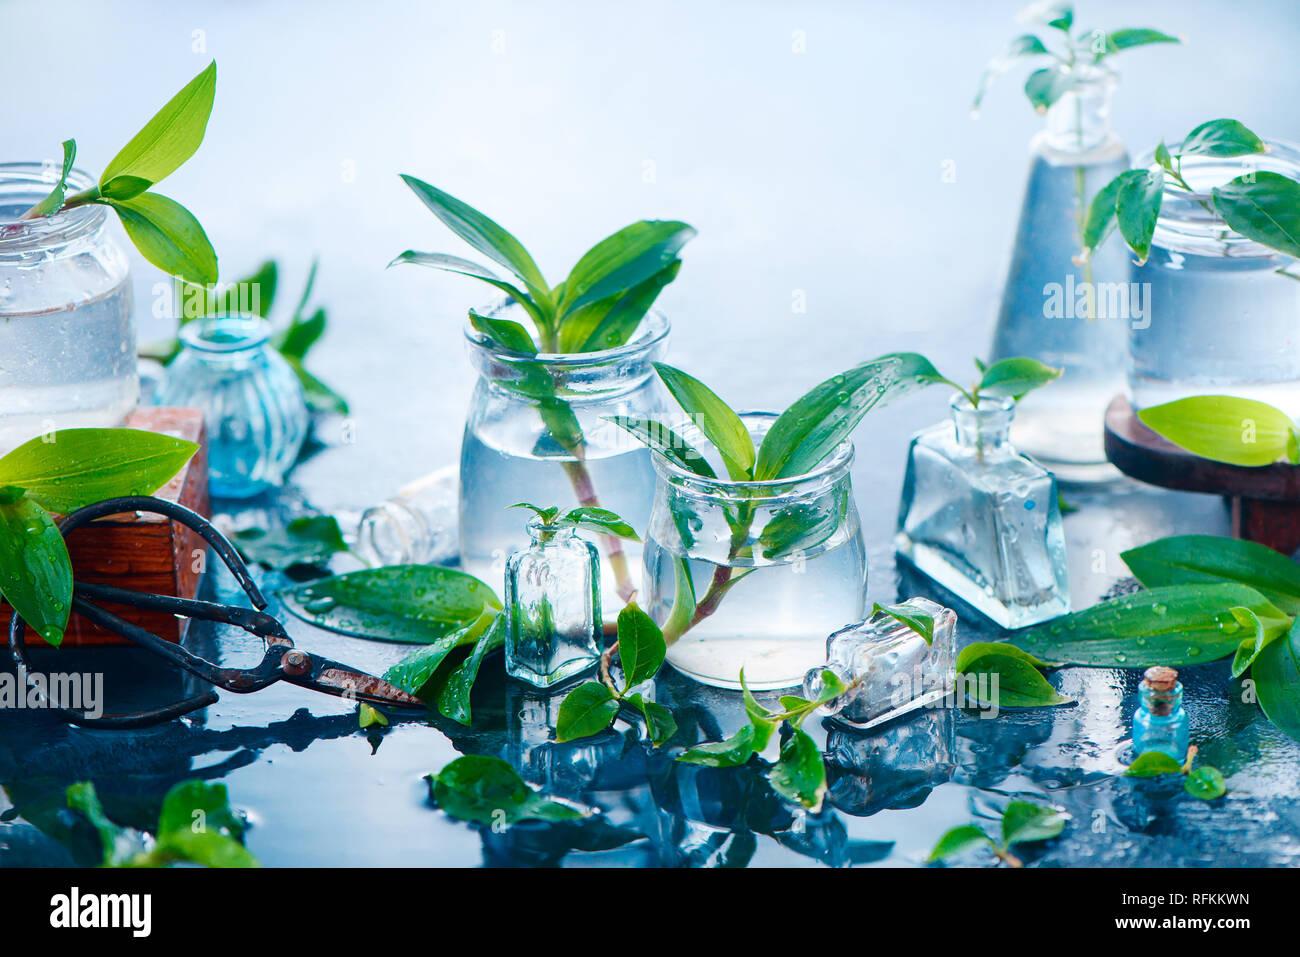 Les plantes vertes en pots de verre sur un fond humide avec des ciseaux de jardinage. Concept de printemps with copy space Banque D'Images